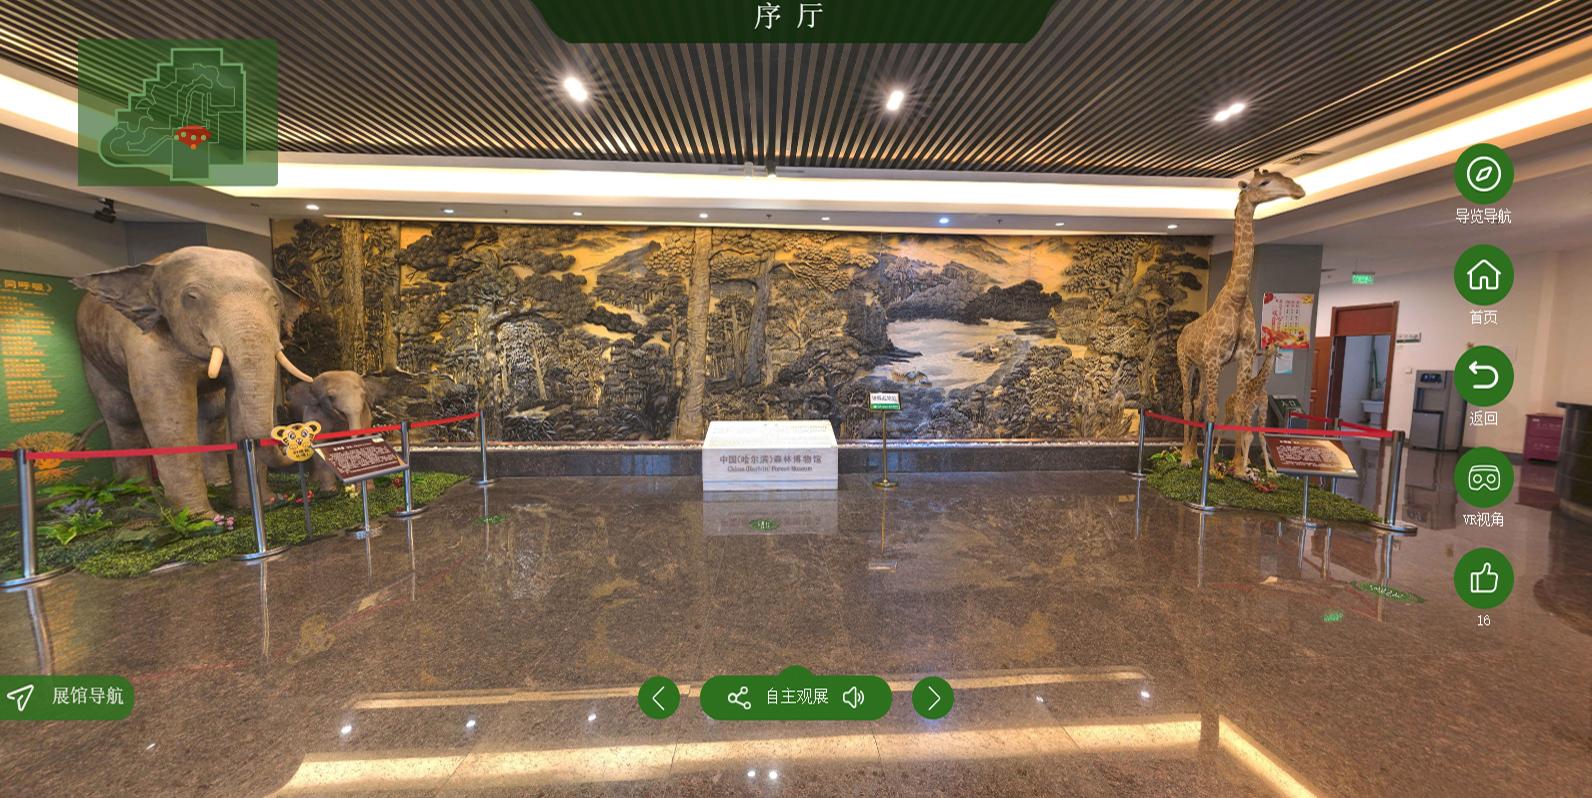 2019北京自然博物馆_旅游攻略_门票_地址_游记点评,北京旅游景点推荐 - 去哪儿攻略社区